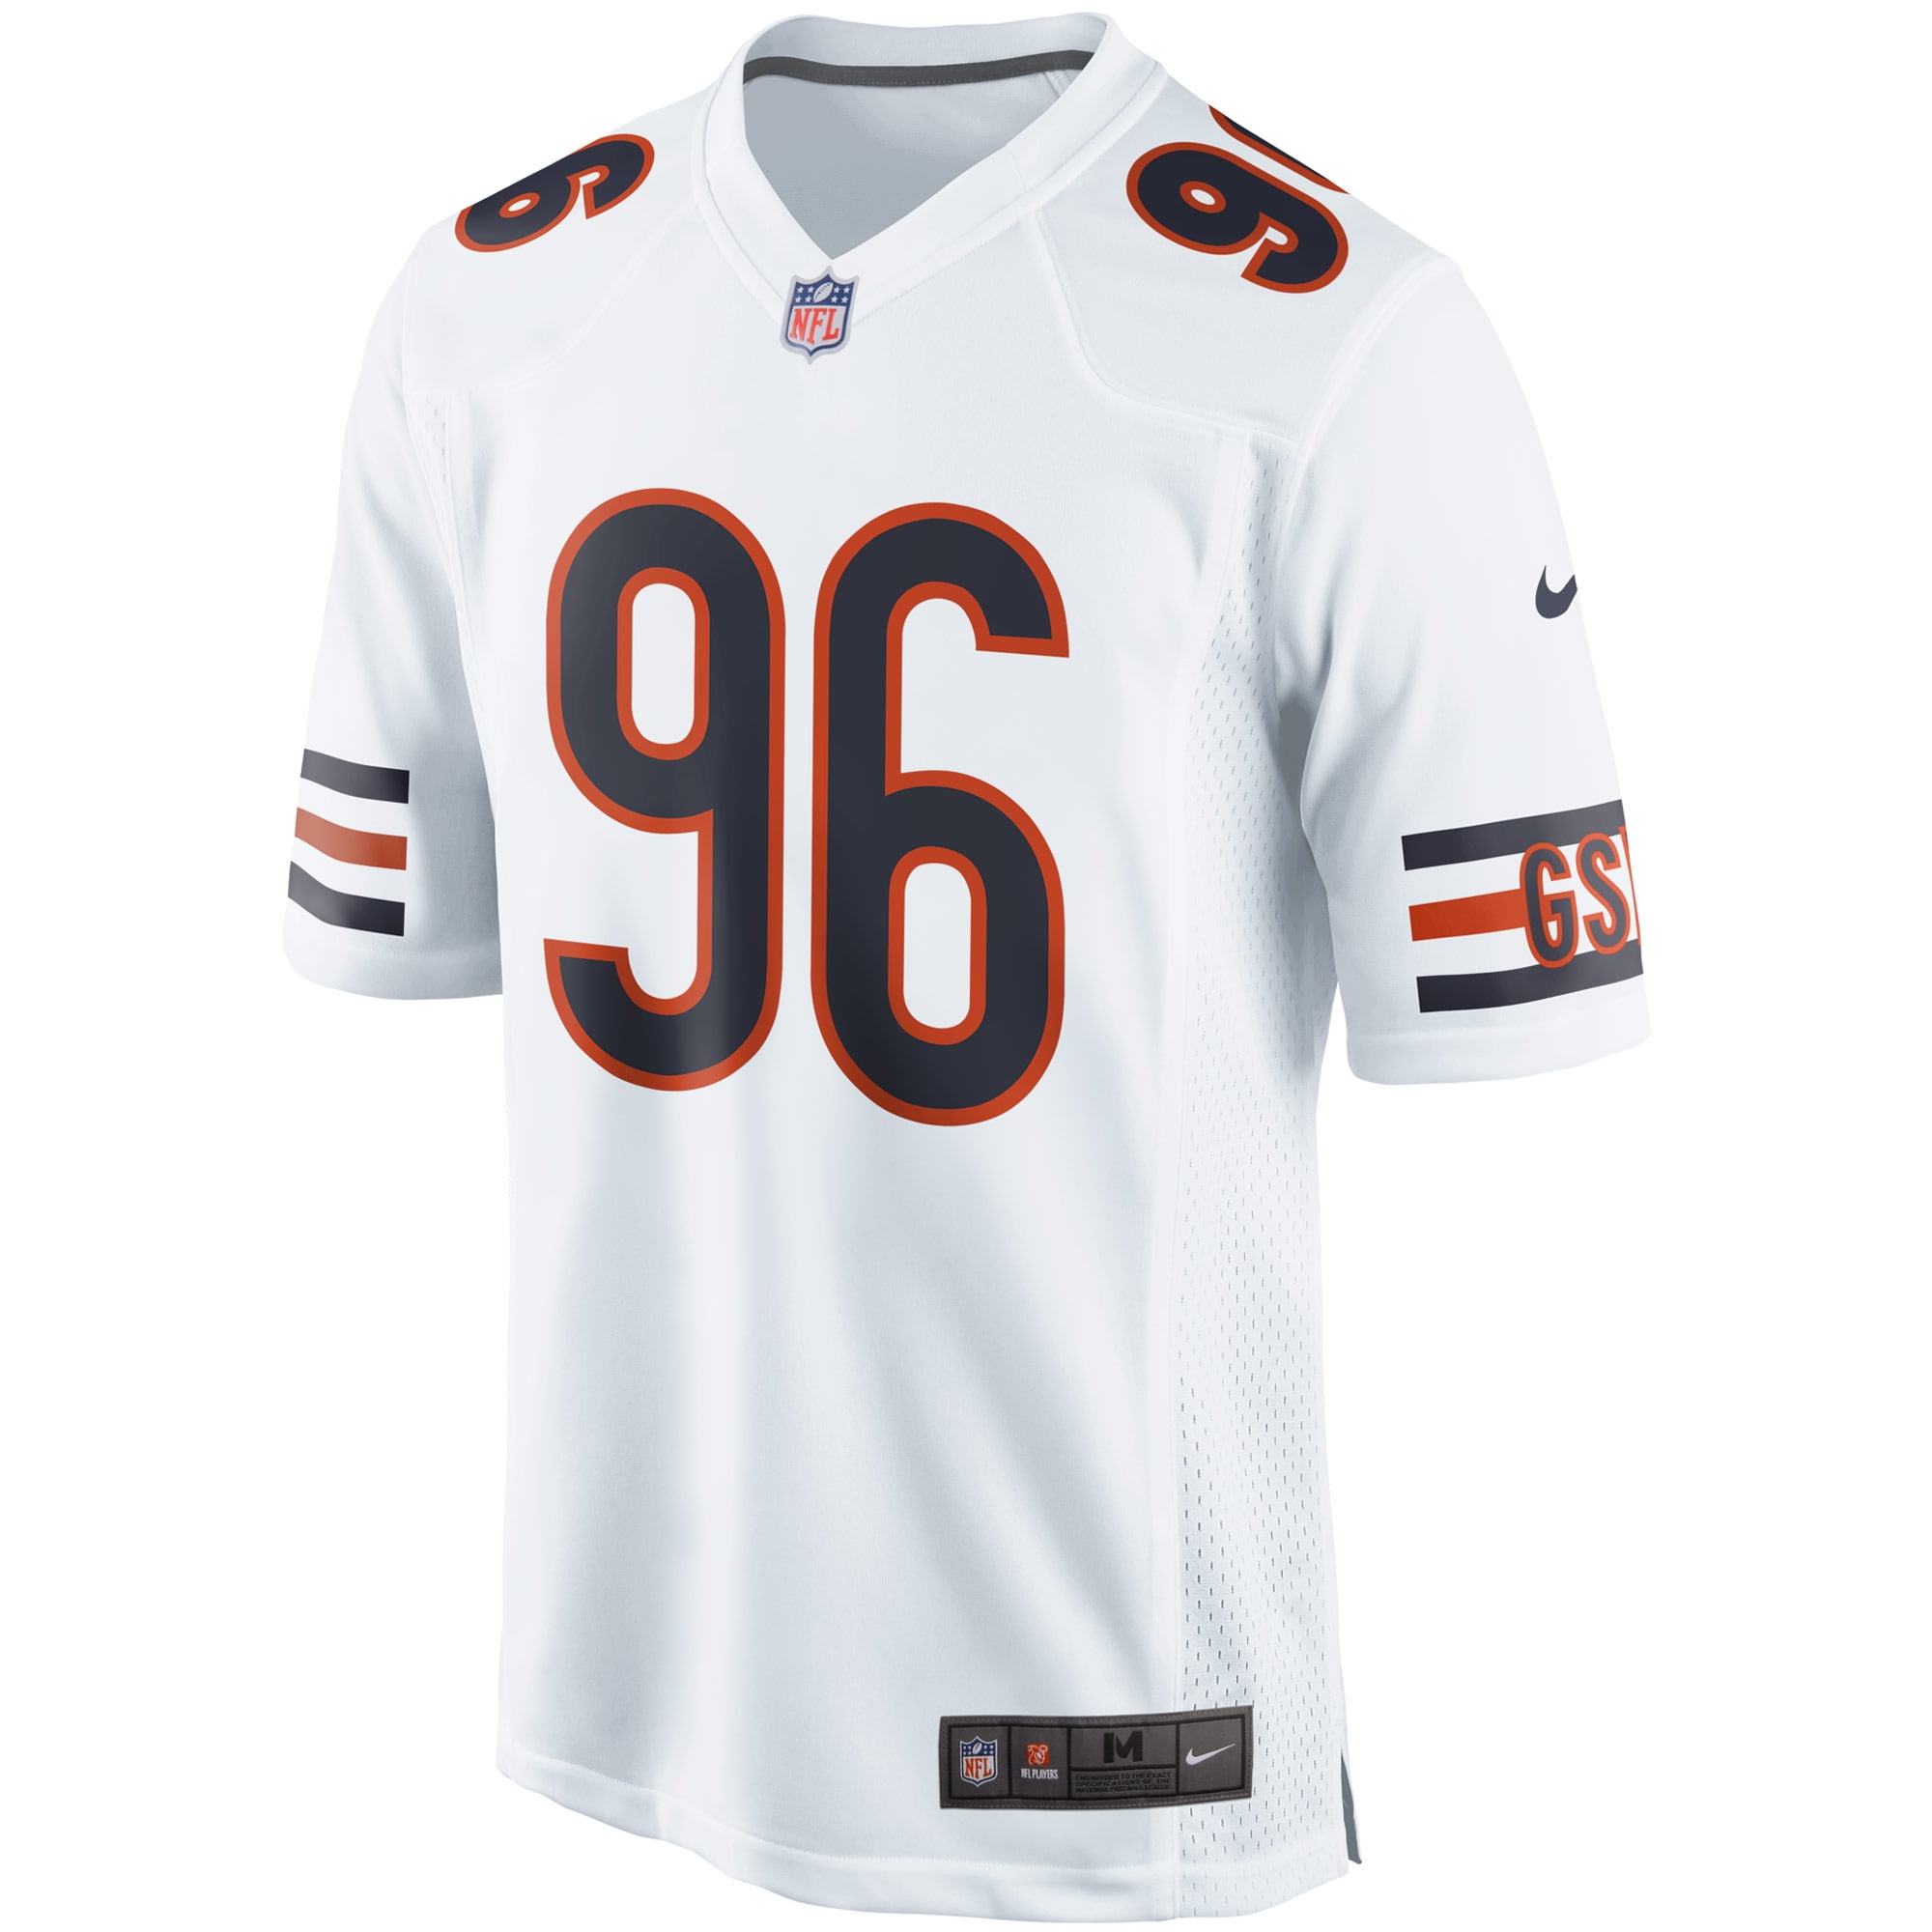 best bears jersey to buy